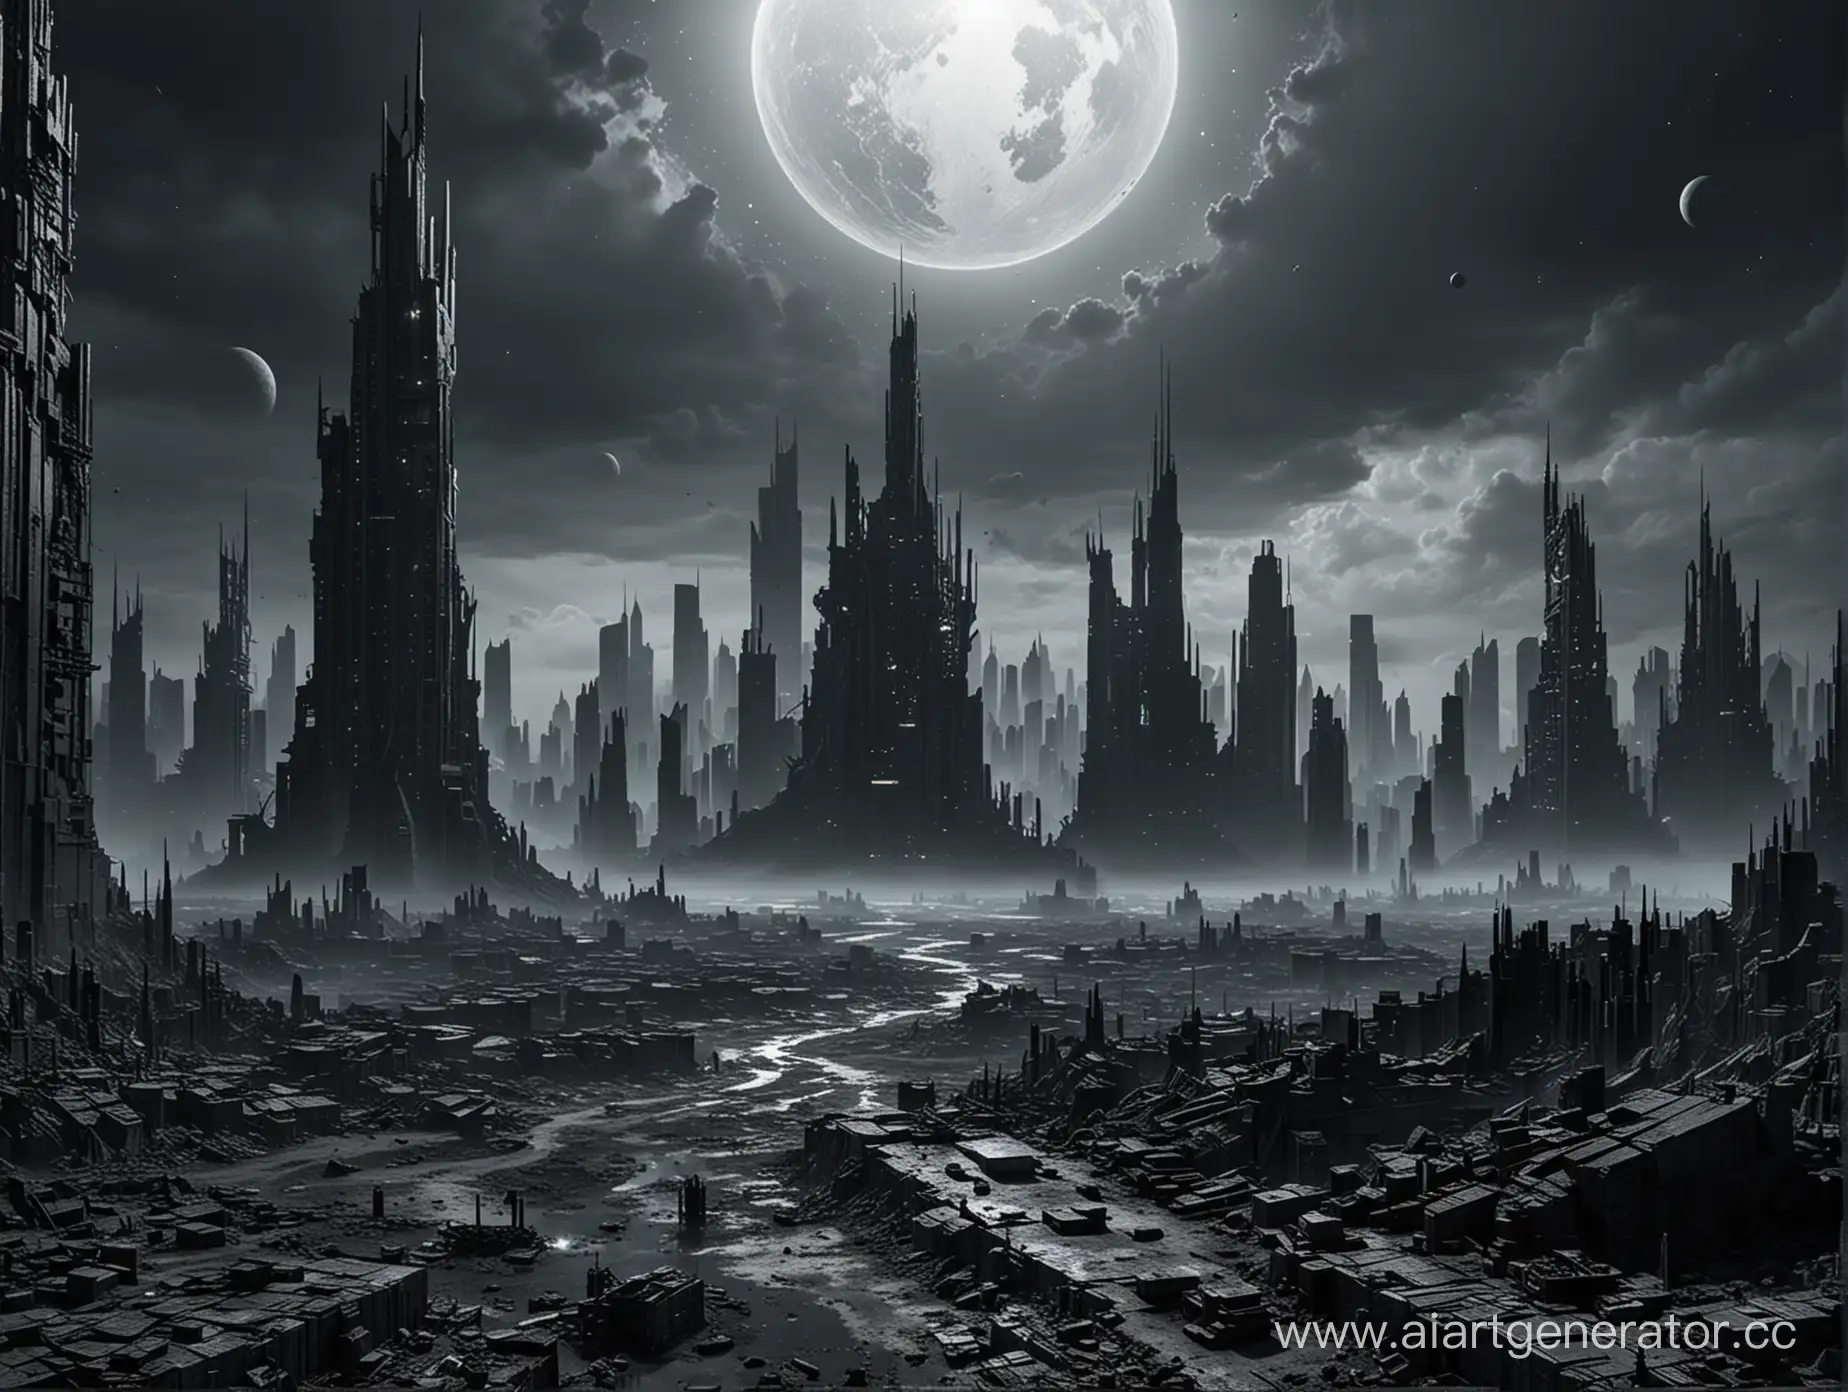 Пустая серая планета в темном космосе с постапокалиптическим городом за огромными стенами высотой в небоскребы, в темных тонах.